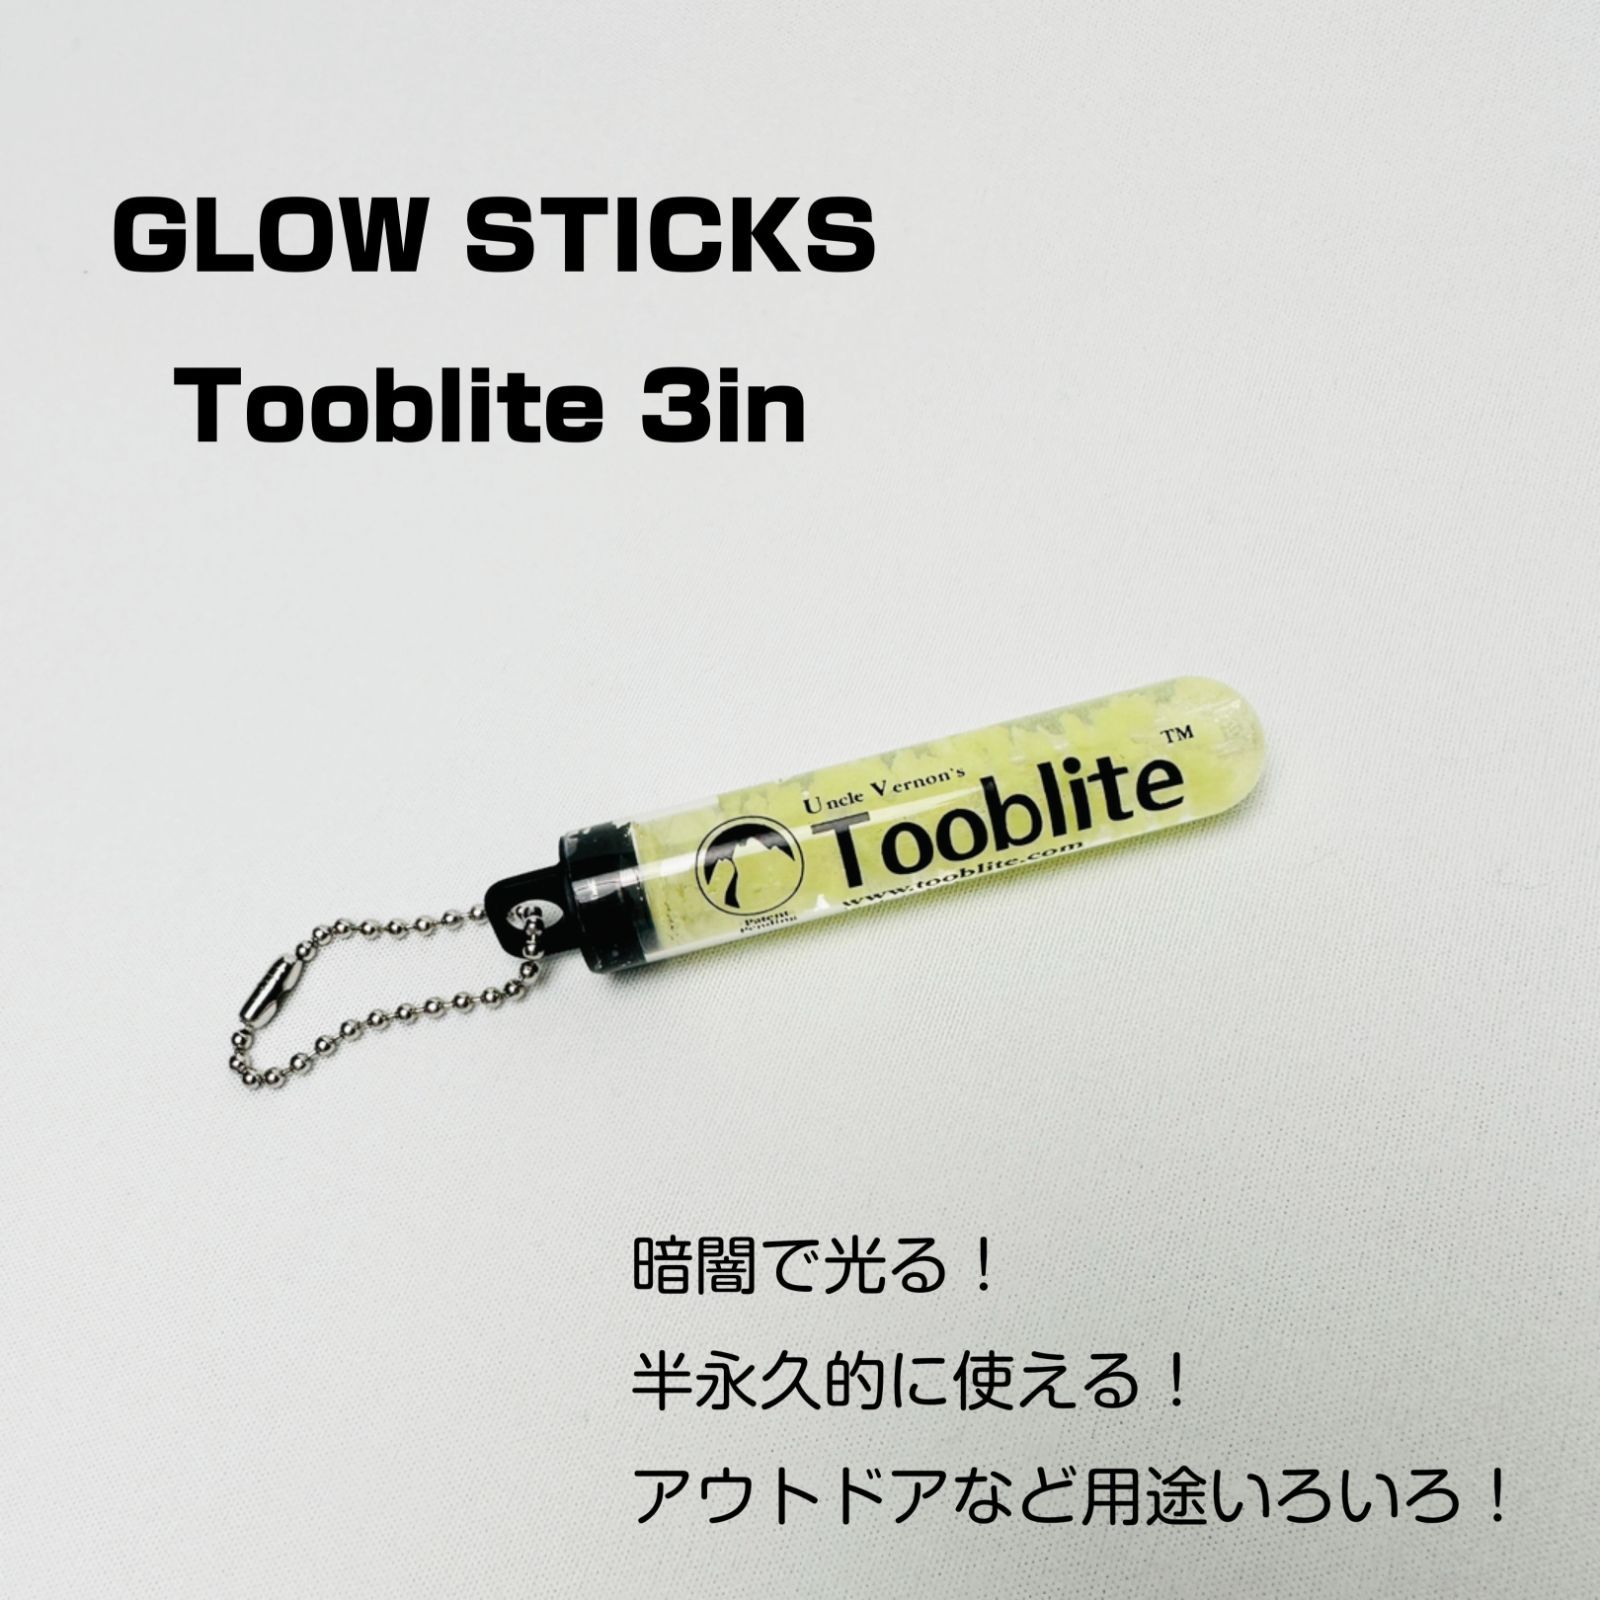 GLOW STICKS Tooblite 3in グロースティック 蓄光 アウトドア キャンプ 